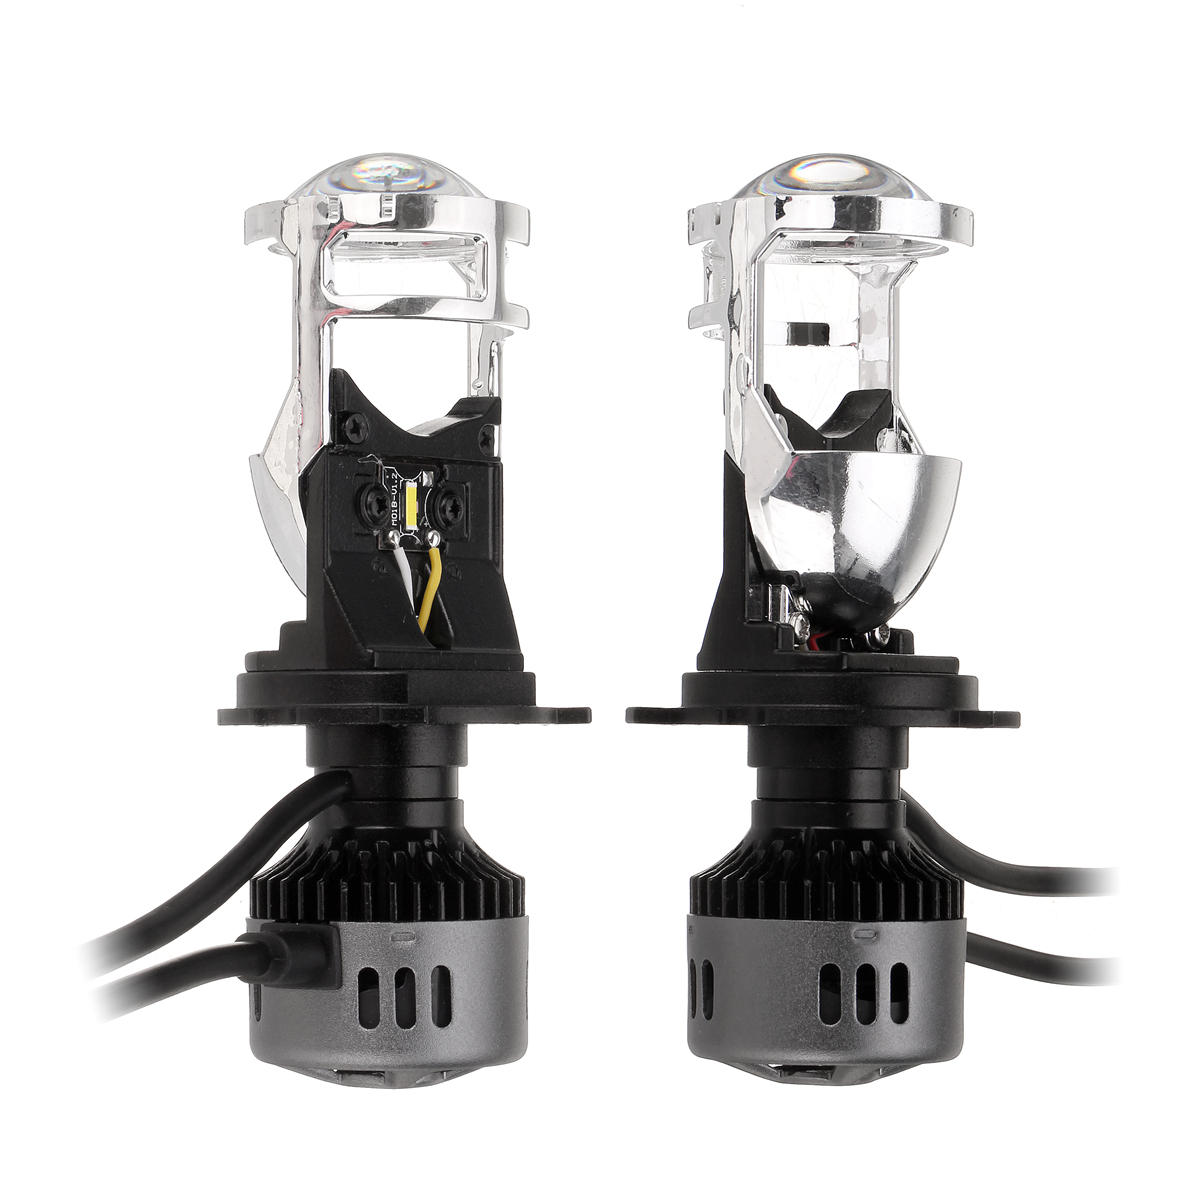 H4 LED-koplampen met mini-projectorlens Hi / Lo-bundellamp 60W 9600LM 6500K Wit voor auto-motorfiets